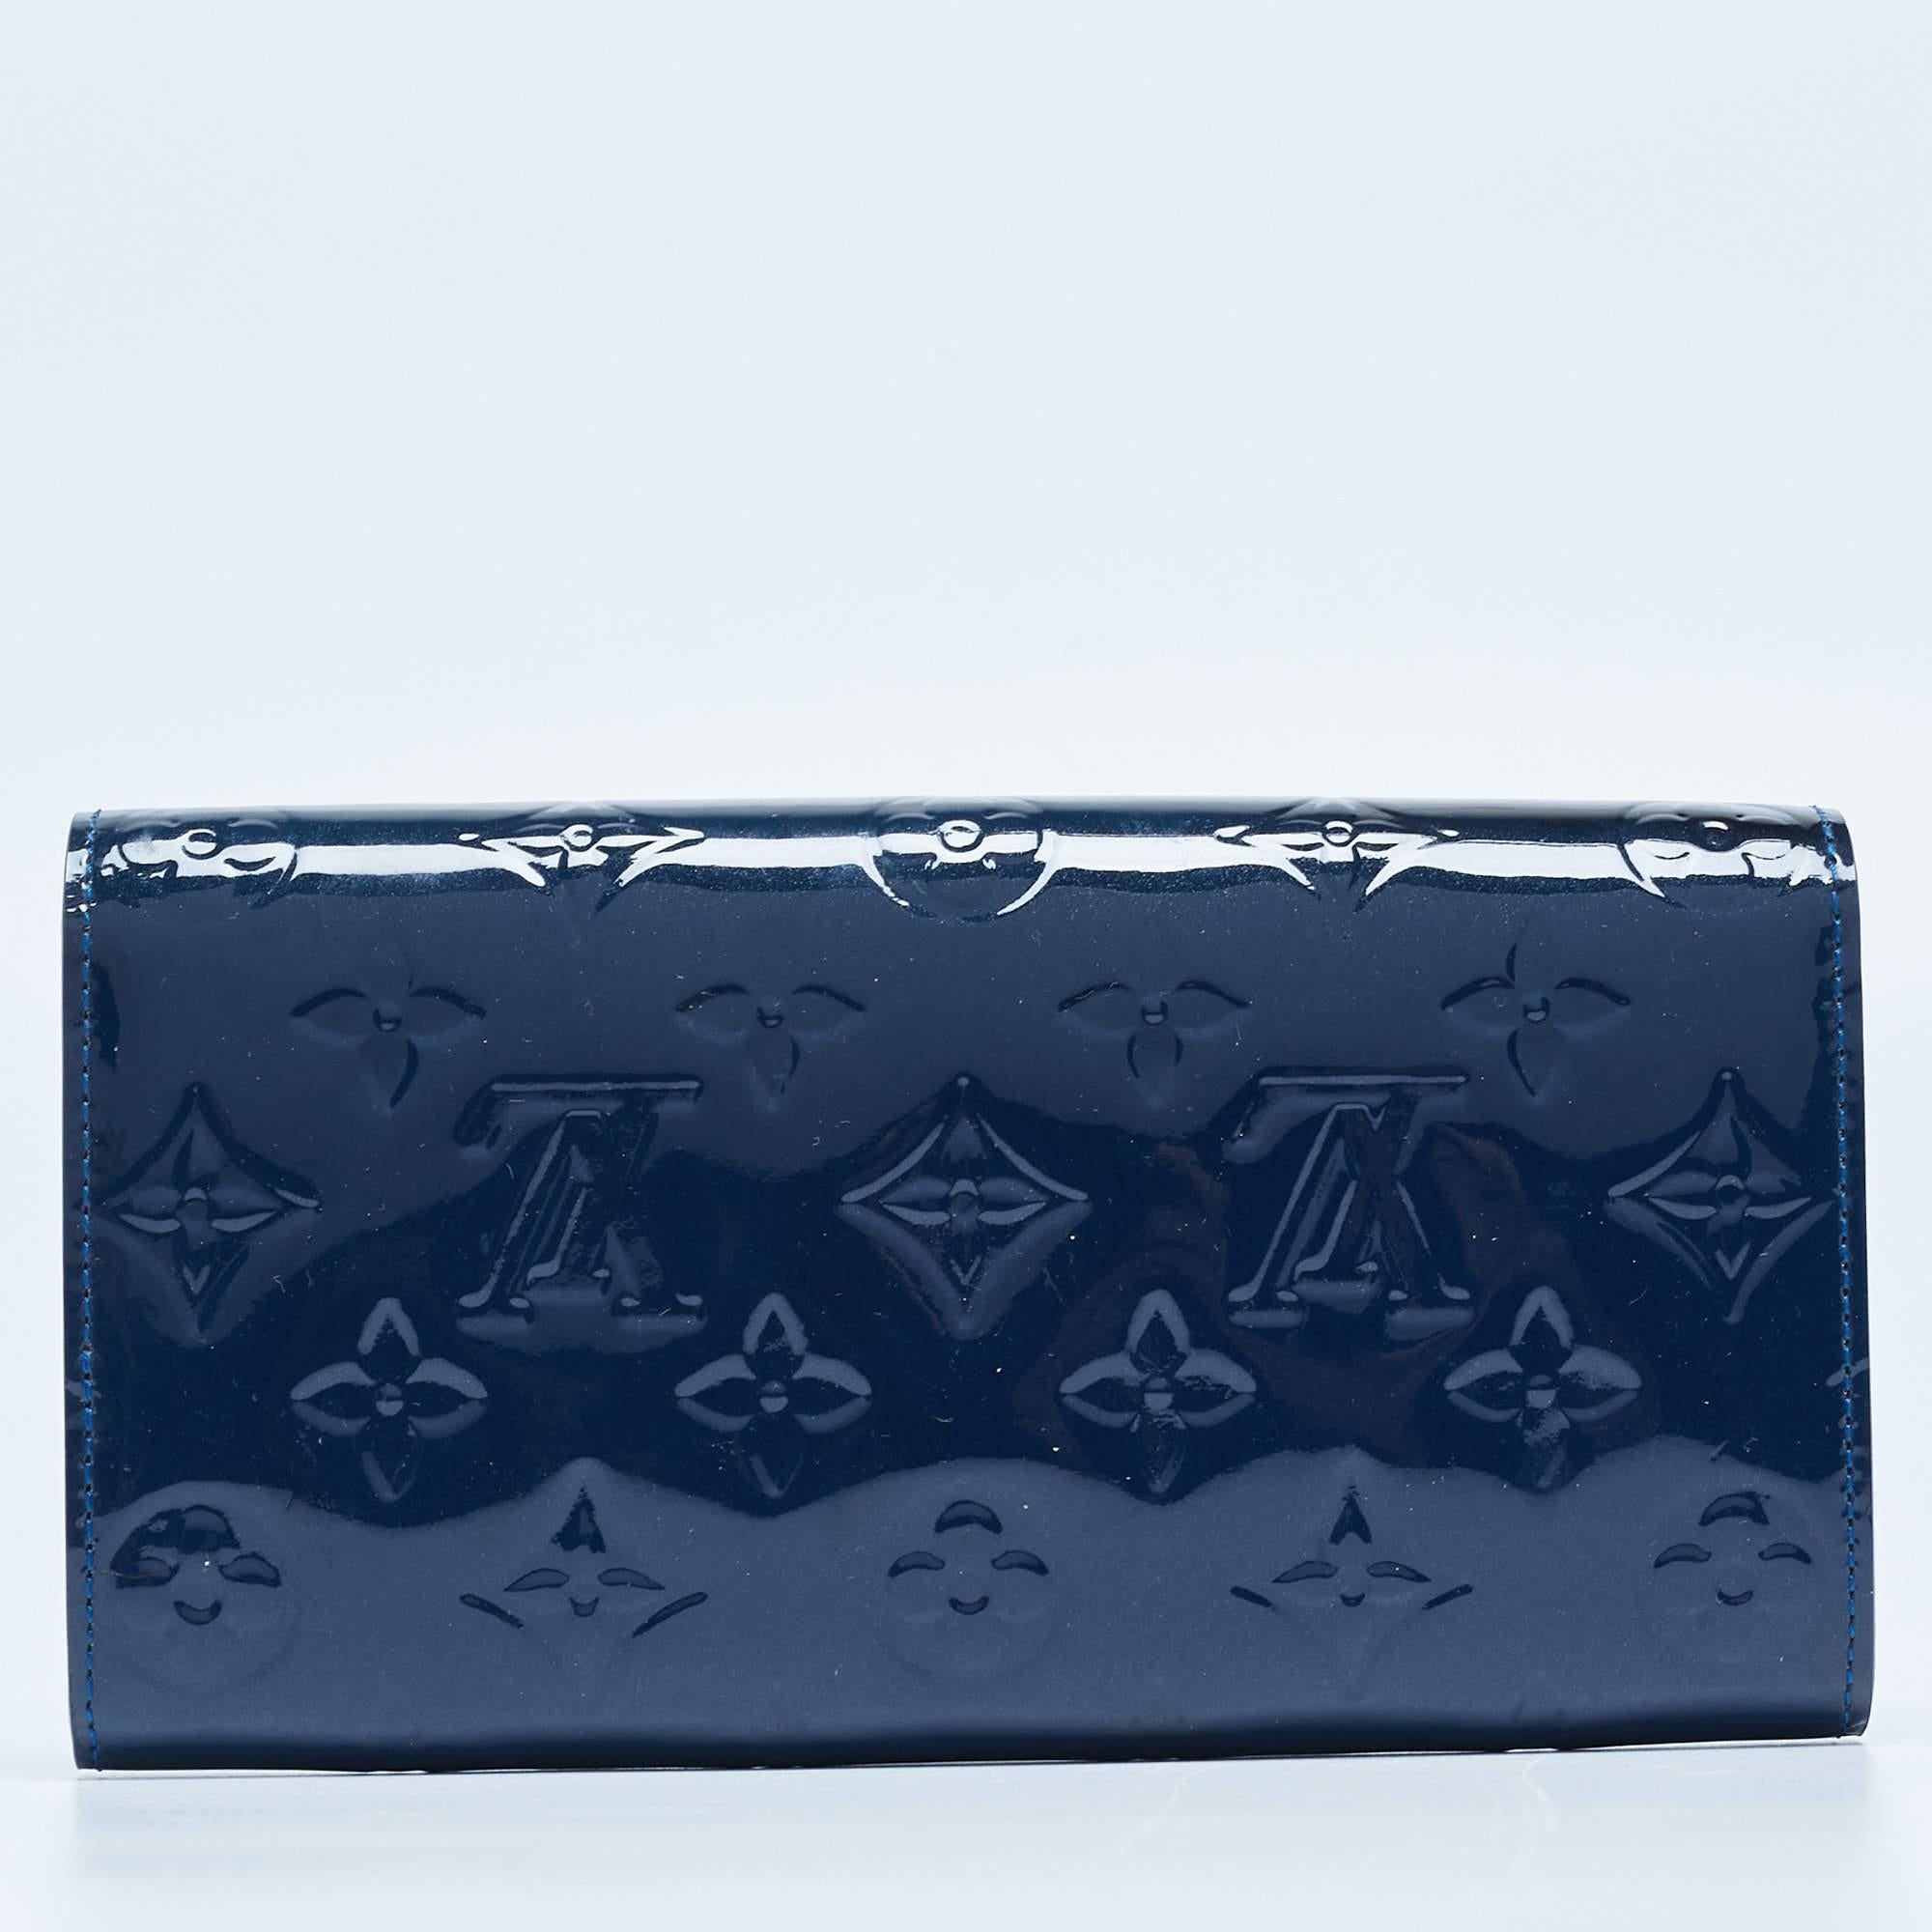 Diese blaue LV-Brieftasche ist praktisch für den täglichen Gebrauch konzipiert. Im gut strukturierten Innenraum können Sie Ihre Karten und Ihr Bargeld übersichtlich unterbringen.

Enthält: Original Staubbeutel, Original Box, Info-Booklet, Original